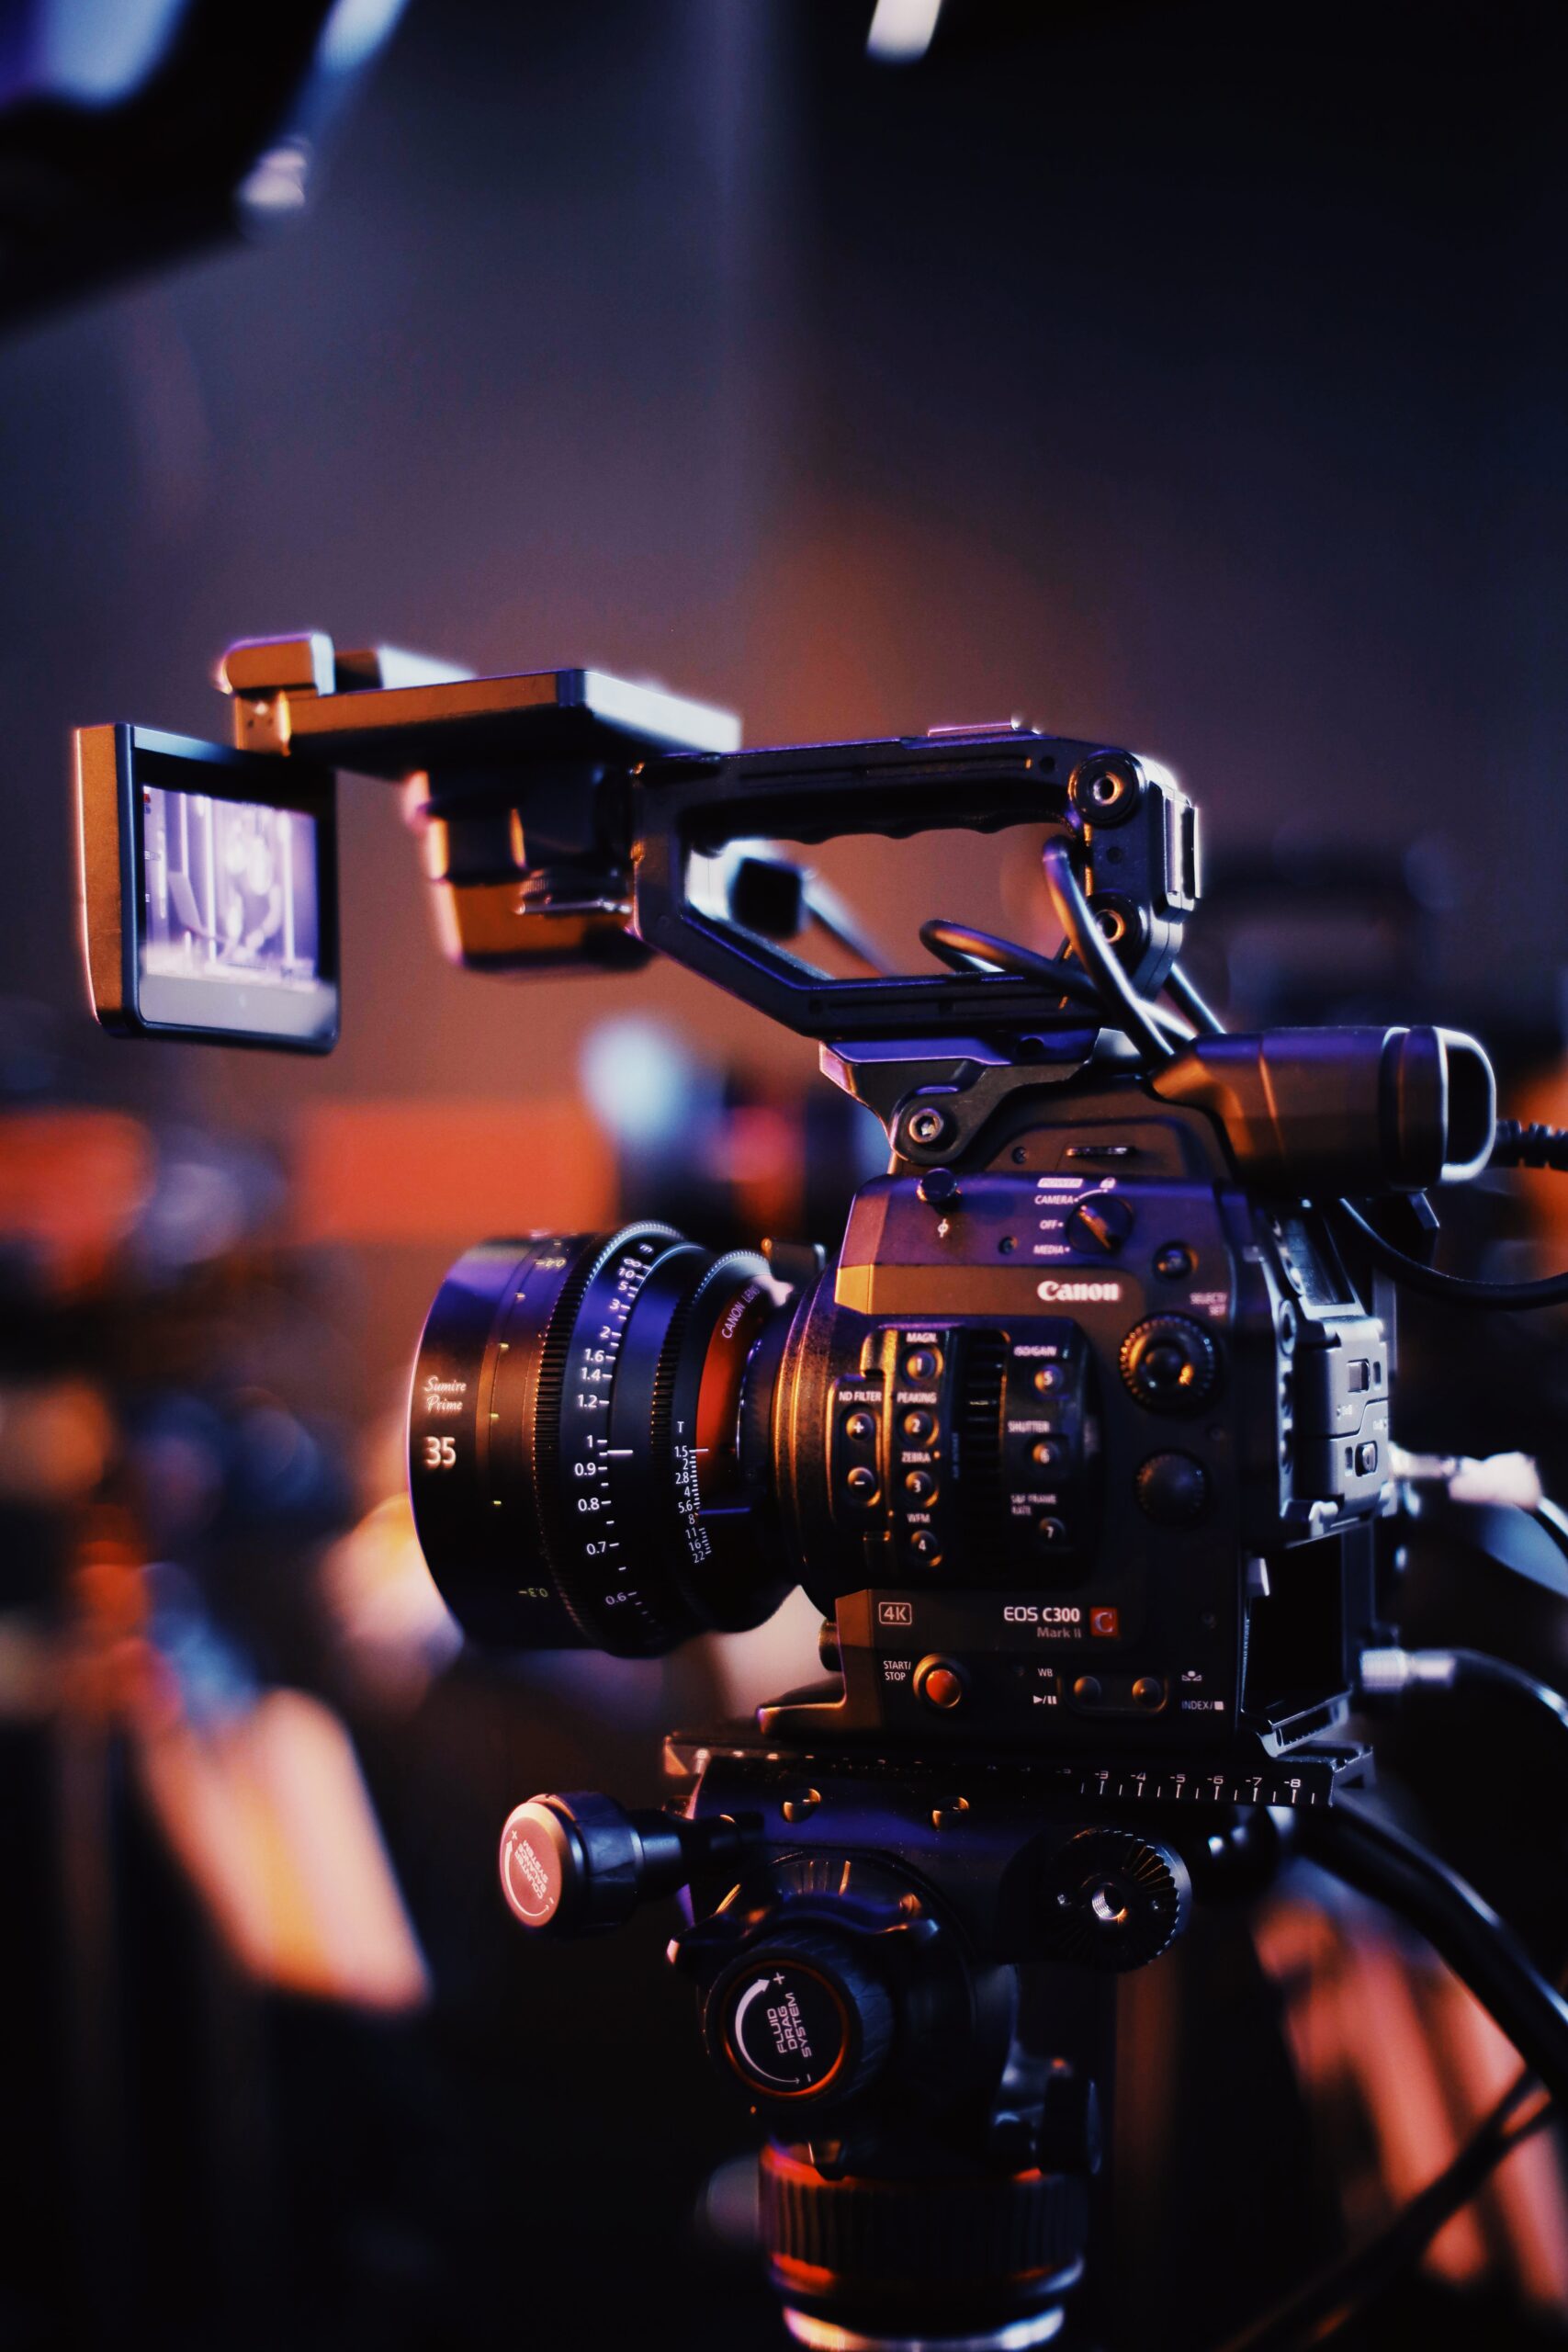 A professional filming camera